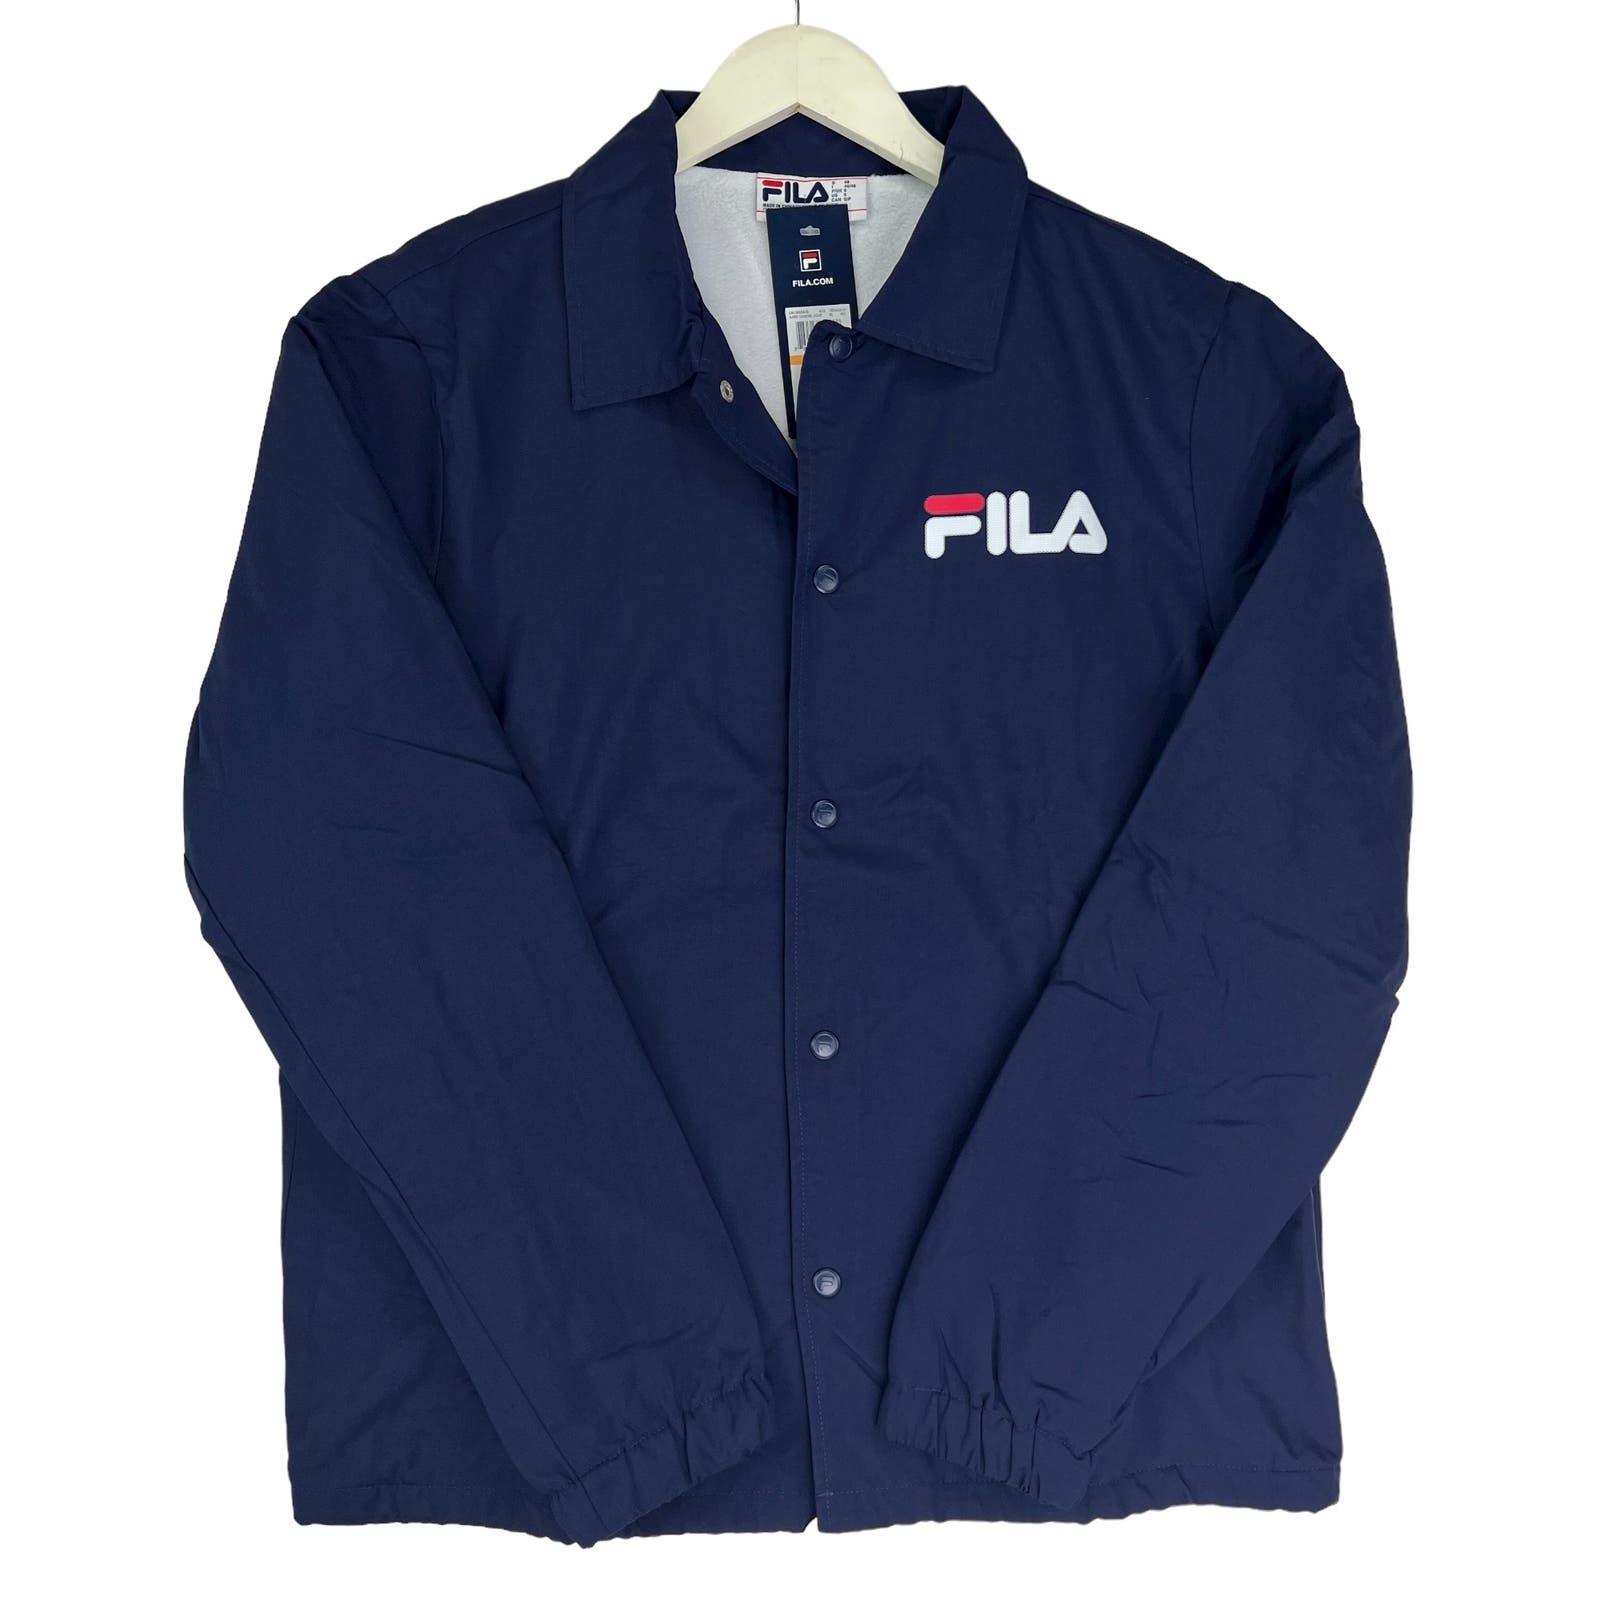 FILA Men Navy Sports Jacket US M Long Sleeves Windbreaker